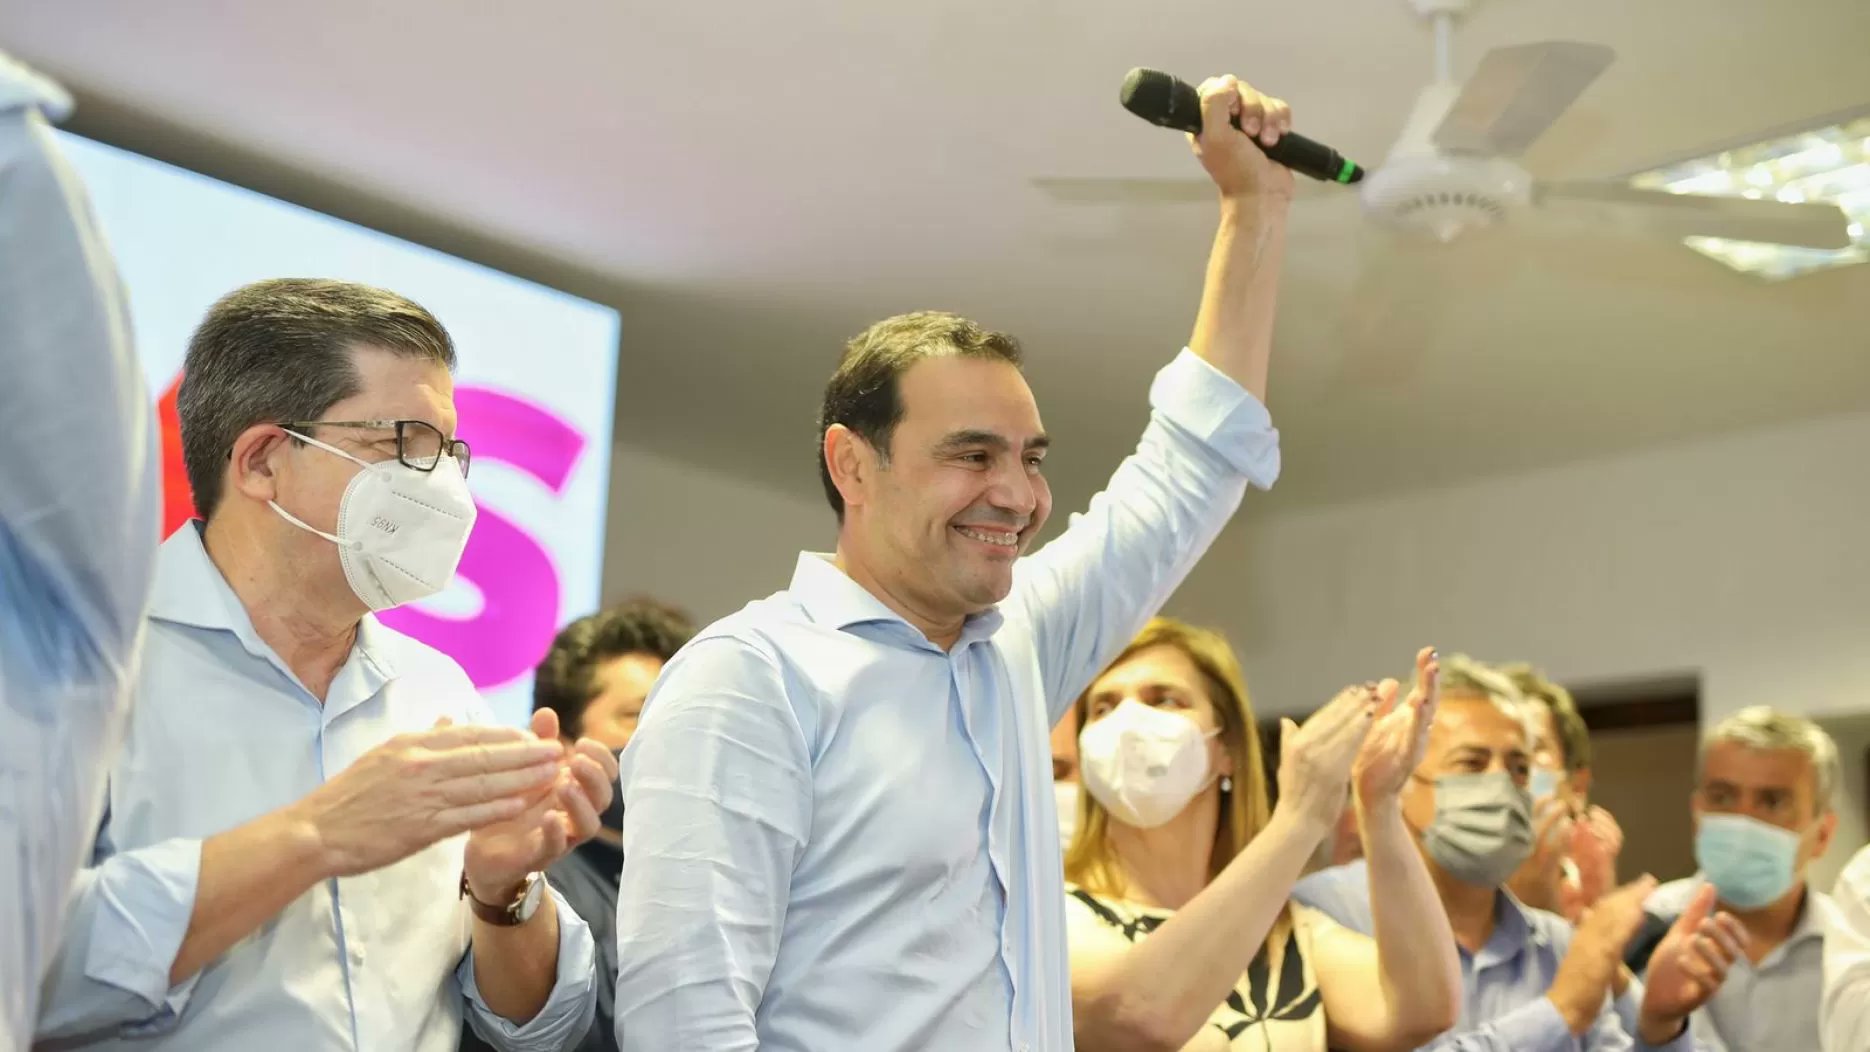 El gobernador correntino Valdés obtiene su reelección con el 76,06%